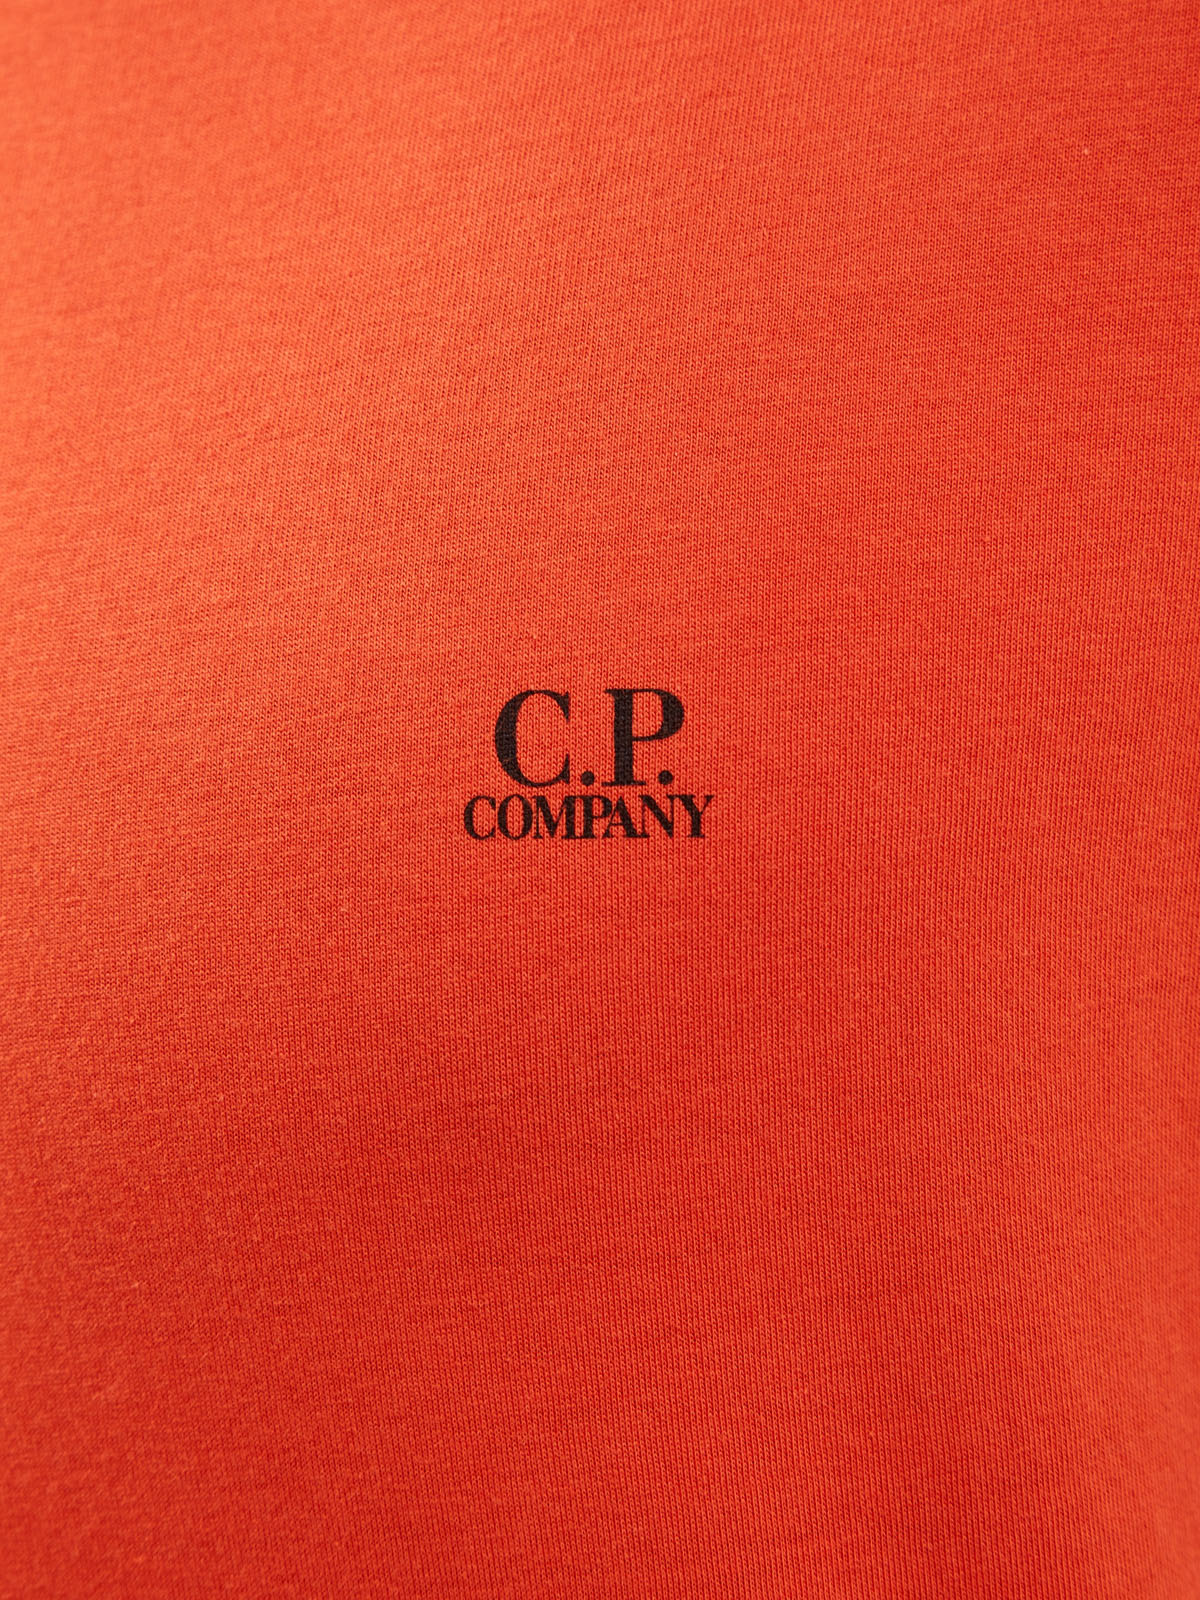 Хлопковая футболка с принтом Goggle Hood и логотипом C.P.COMPANY, цвет оранжевый, размер S;L;XL;2XL - фото 5